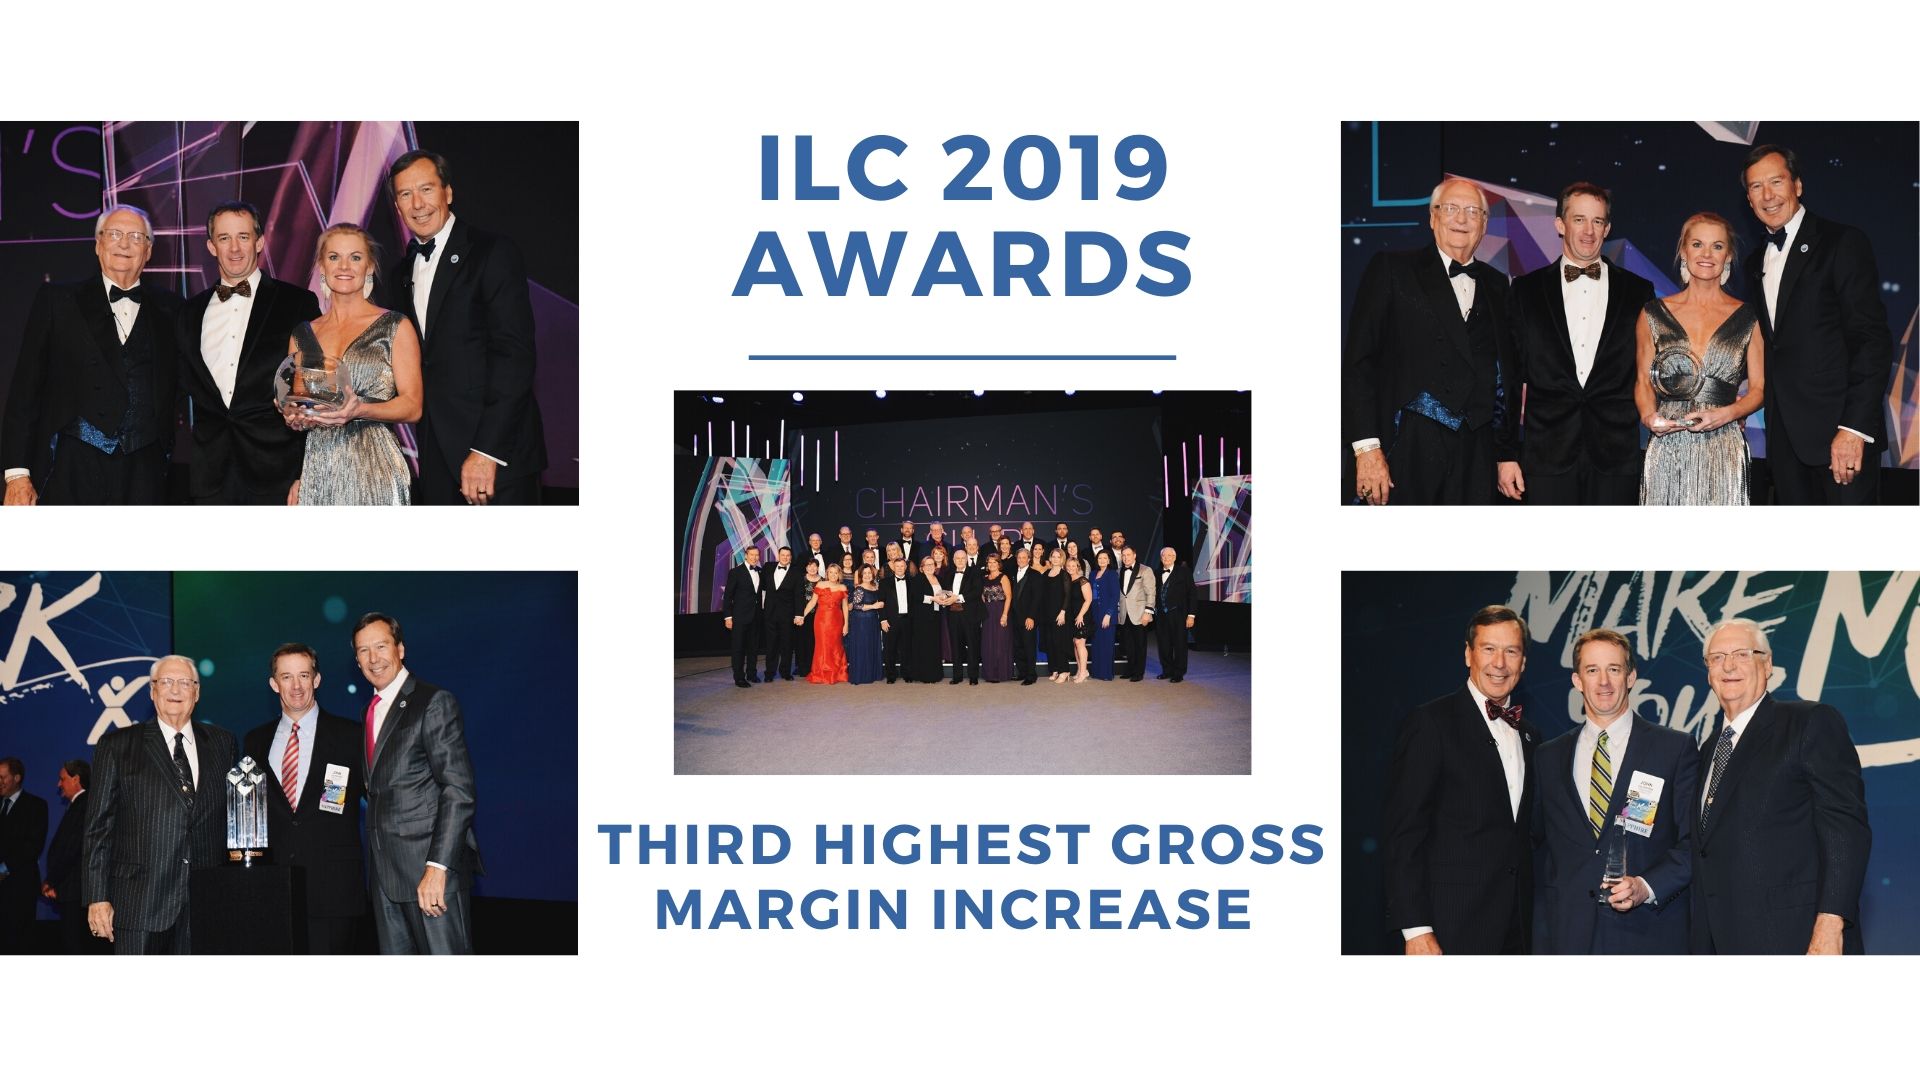 ILC 2019 Awards